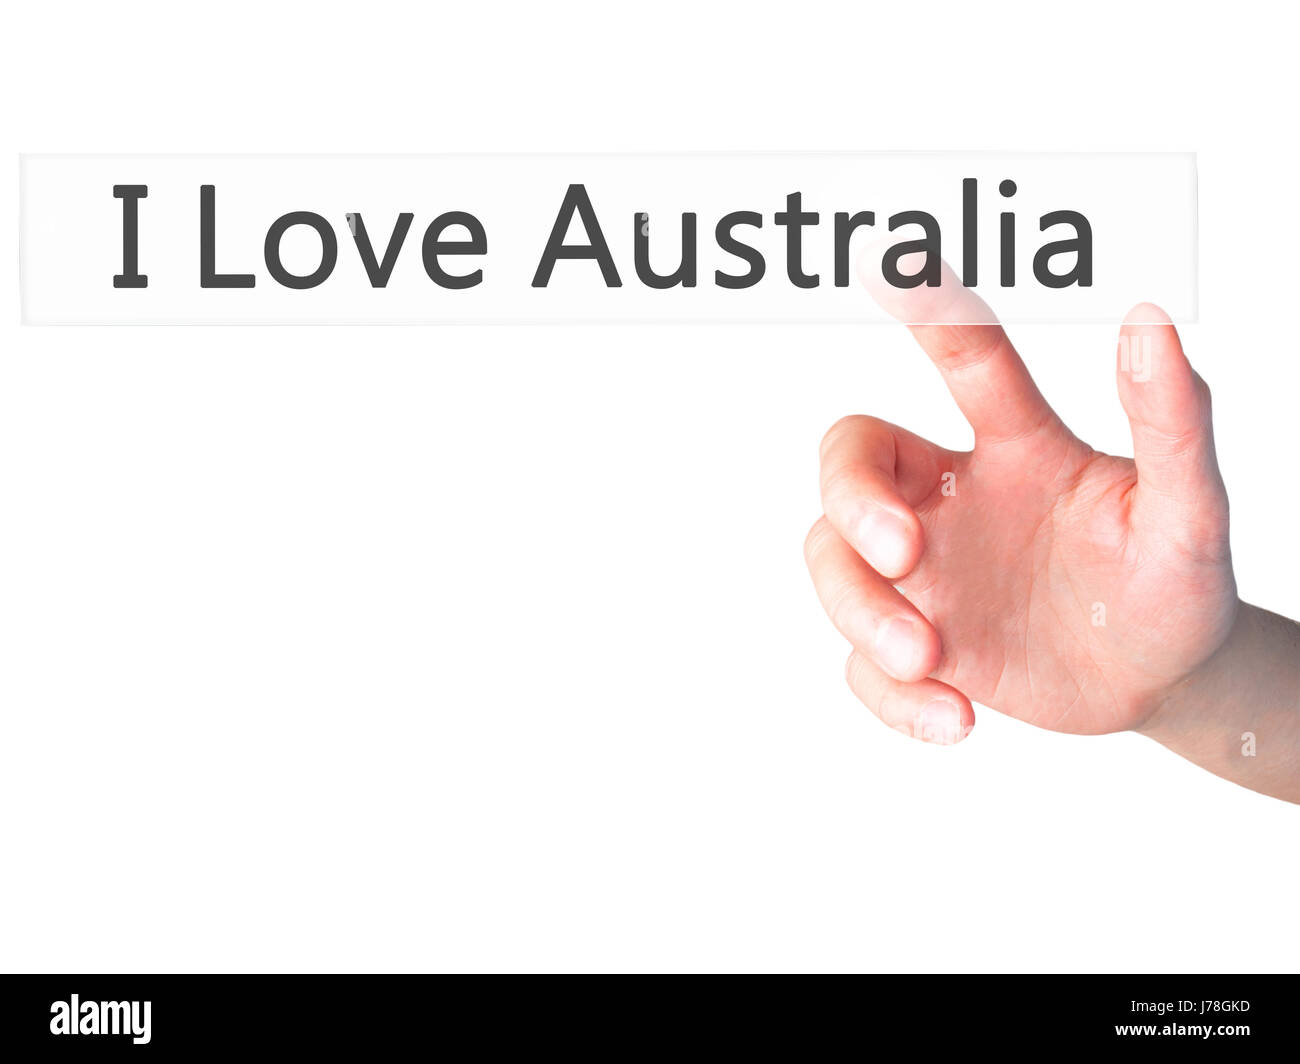 Io amo Australia - Mano premendo un pulsante sul fondo sfocato concetto . Business, tecnologia internet concetto. Stock Photo Foto Stock